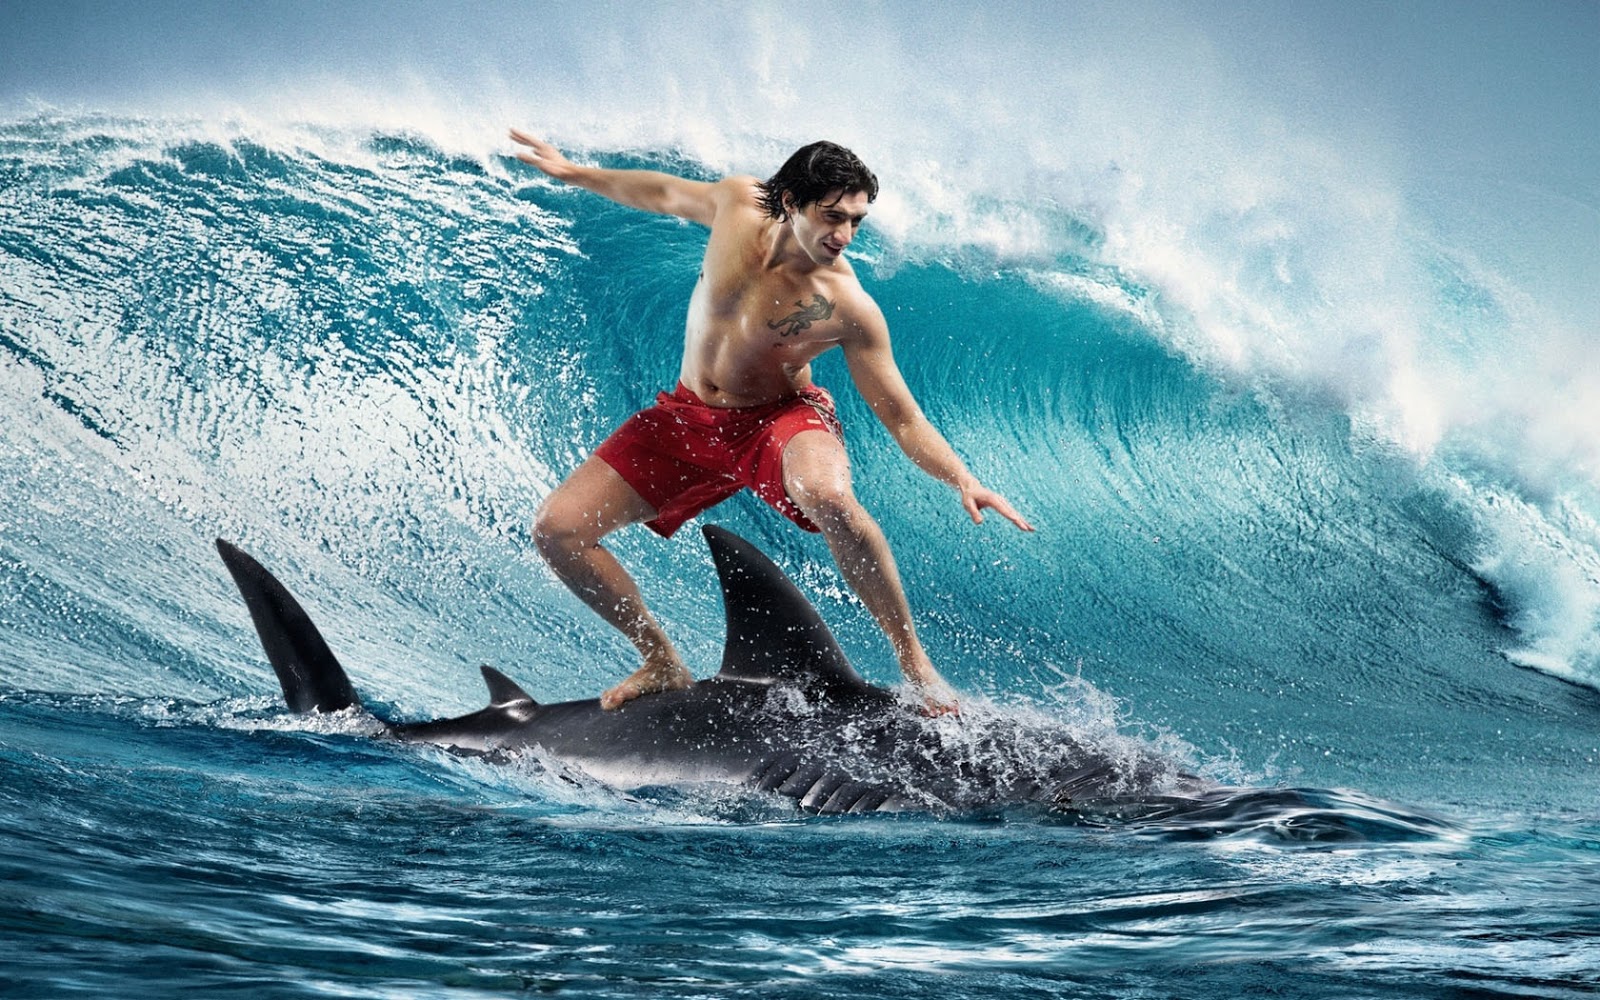 The shark, the surfer’s greatest fear